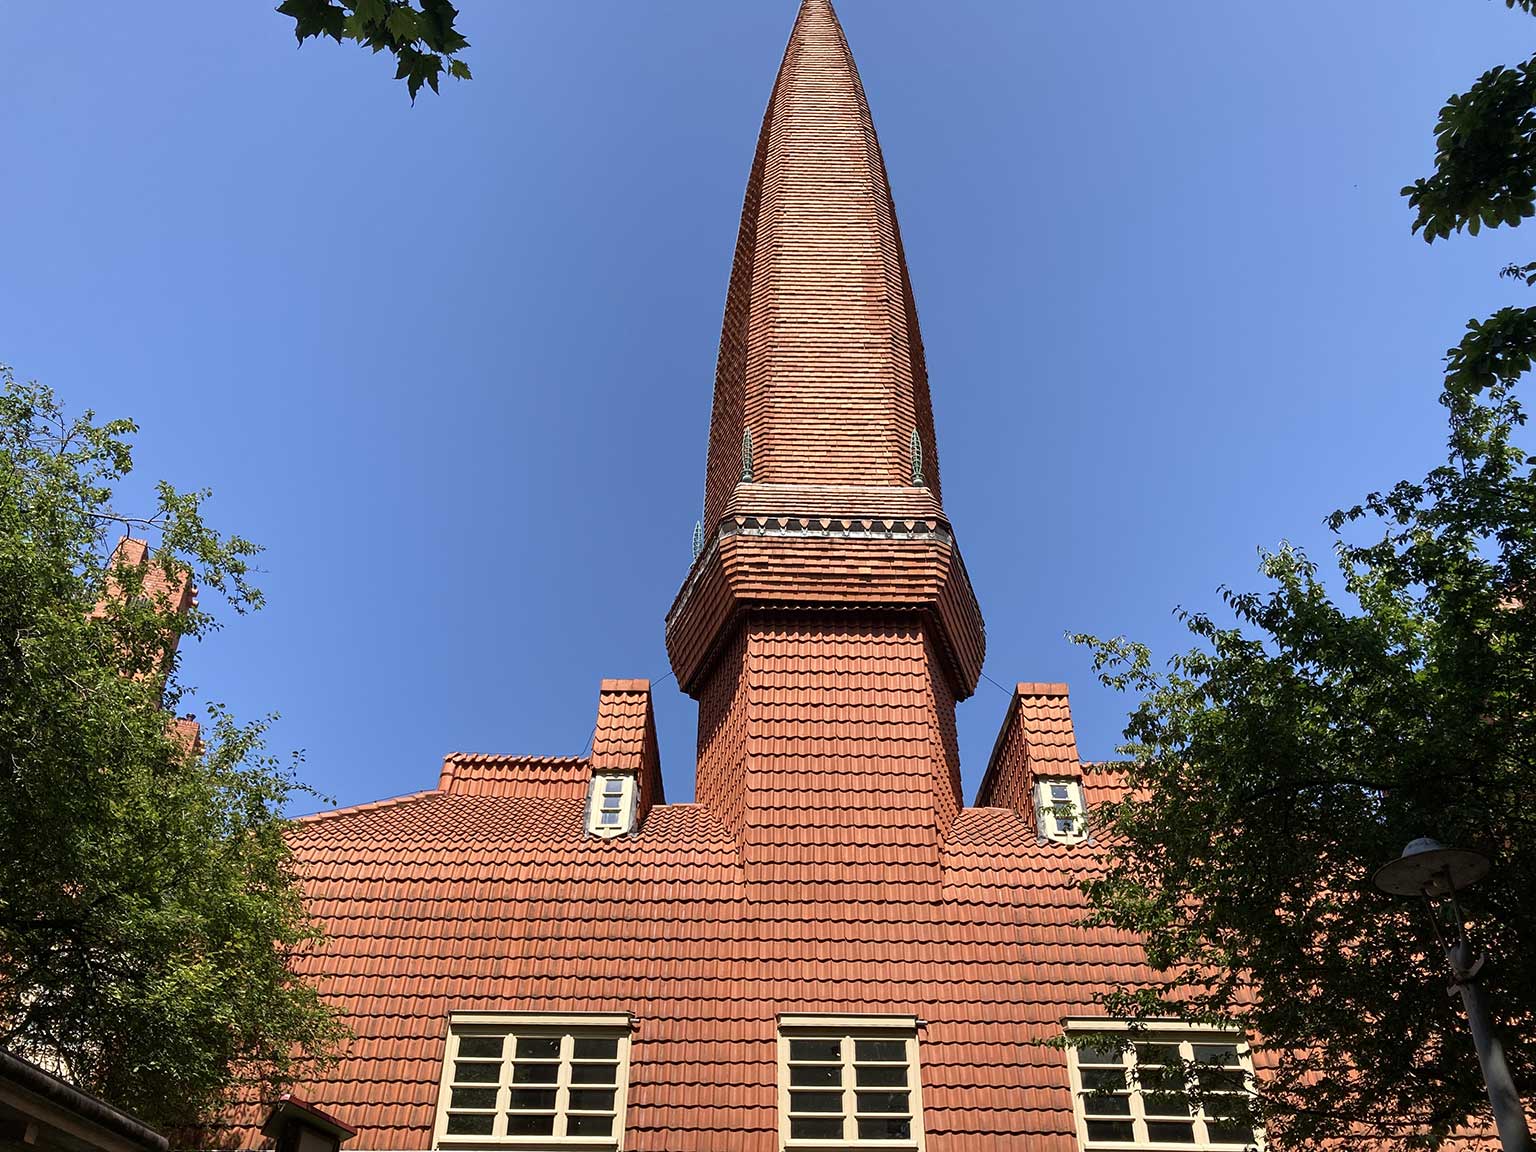 Huizenblok Het Schip, Amsterdam, de met dakpannen beklede toren op het dak